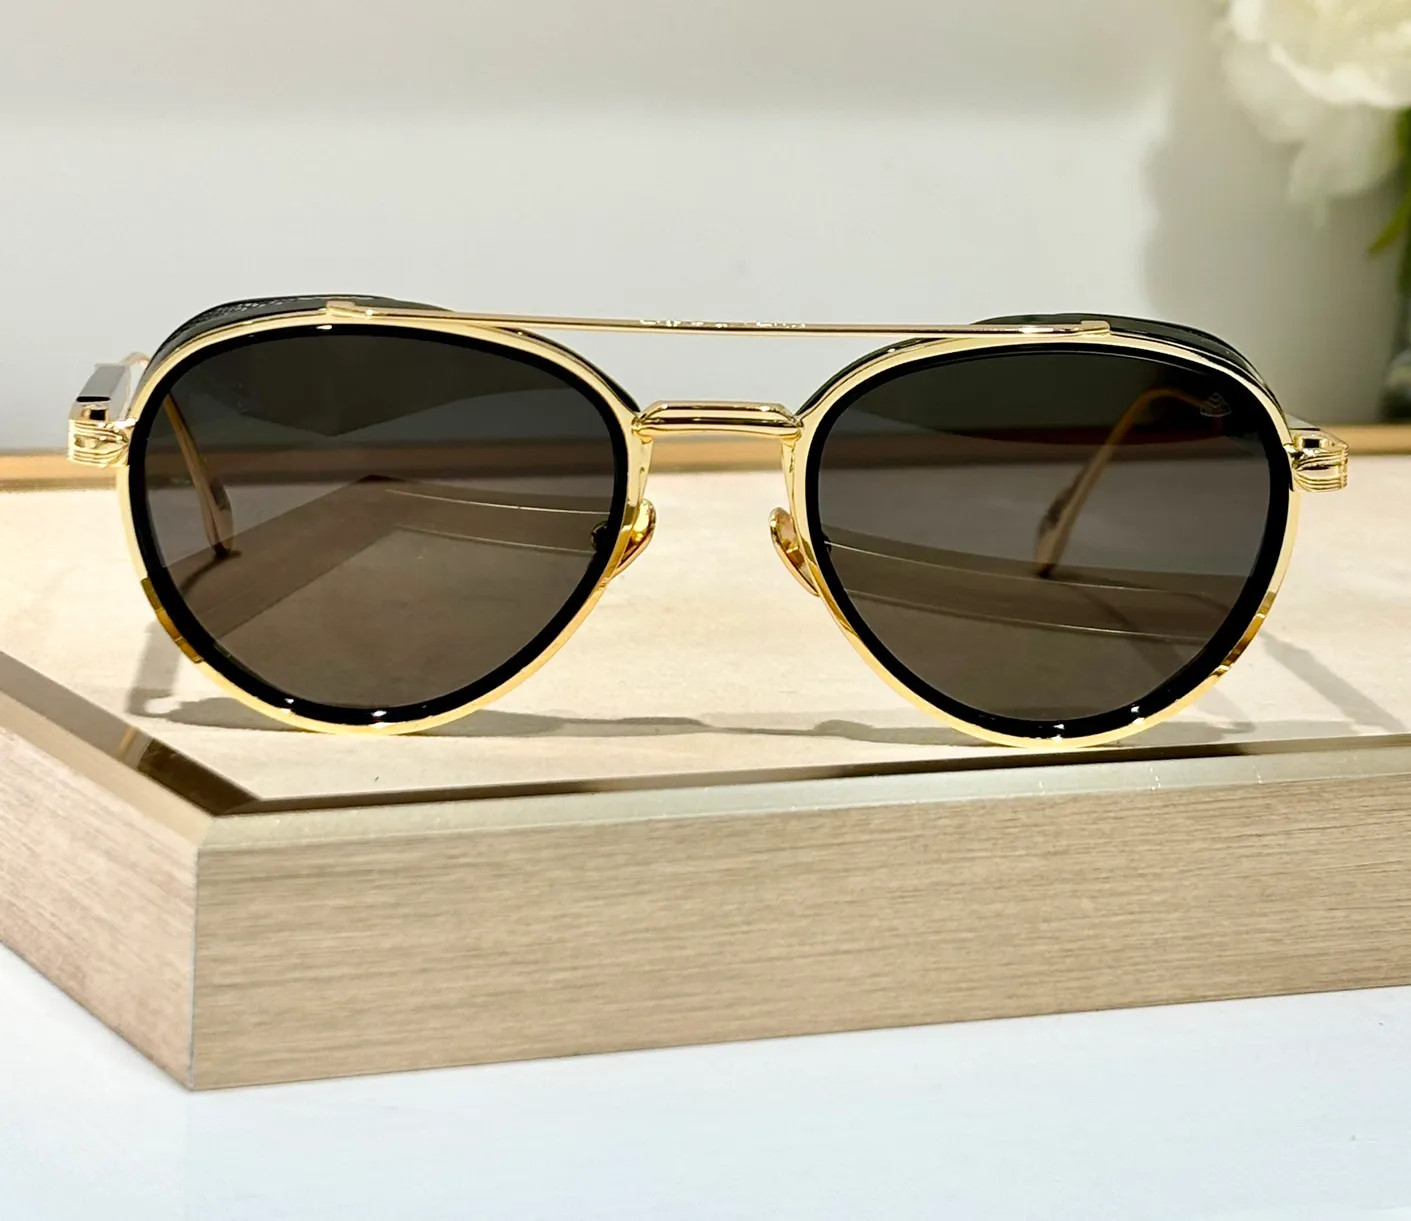 Gold Pilot Sunglasses Black/Dark Gray Lenses for Men Luxury Glasses Shades Occhiali da sole UV400 Eyewear